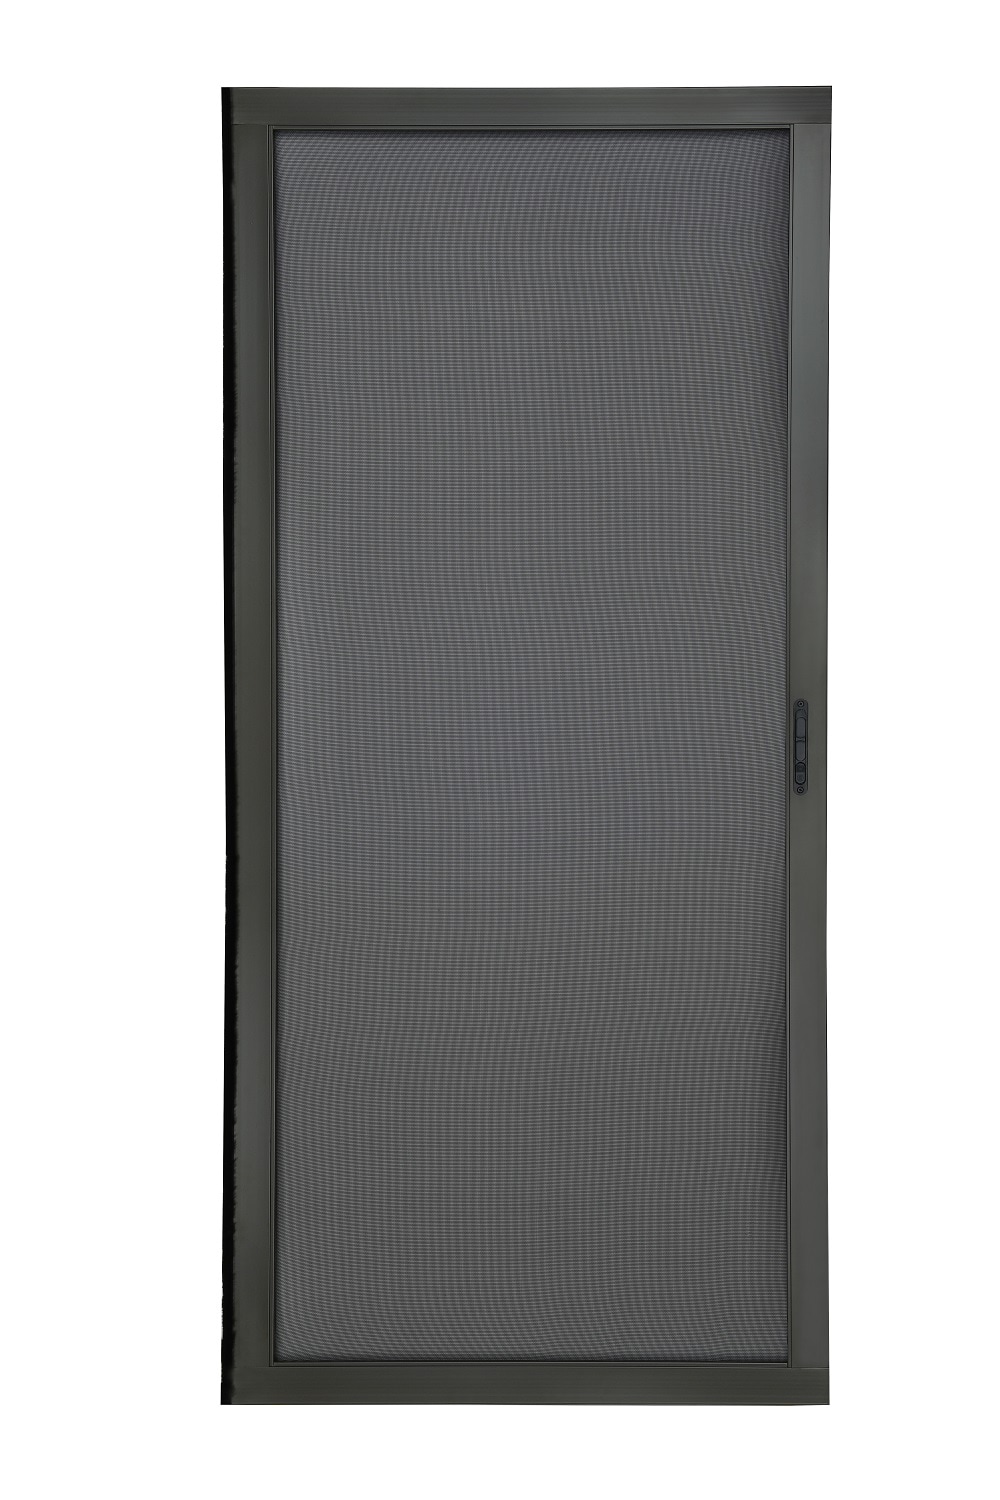 RELIABILT 36-in x 80-in Bronze Aluminum Sliding Patio Screen Door at ...